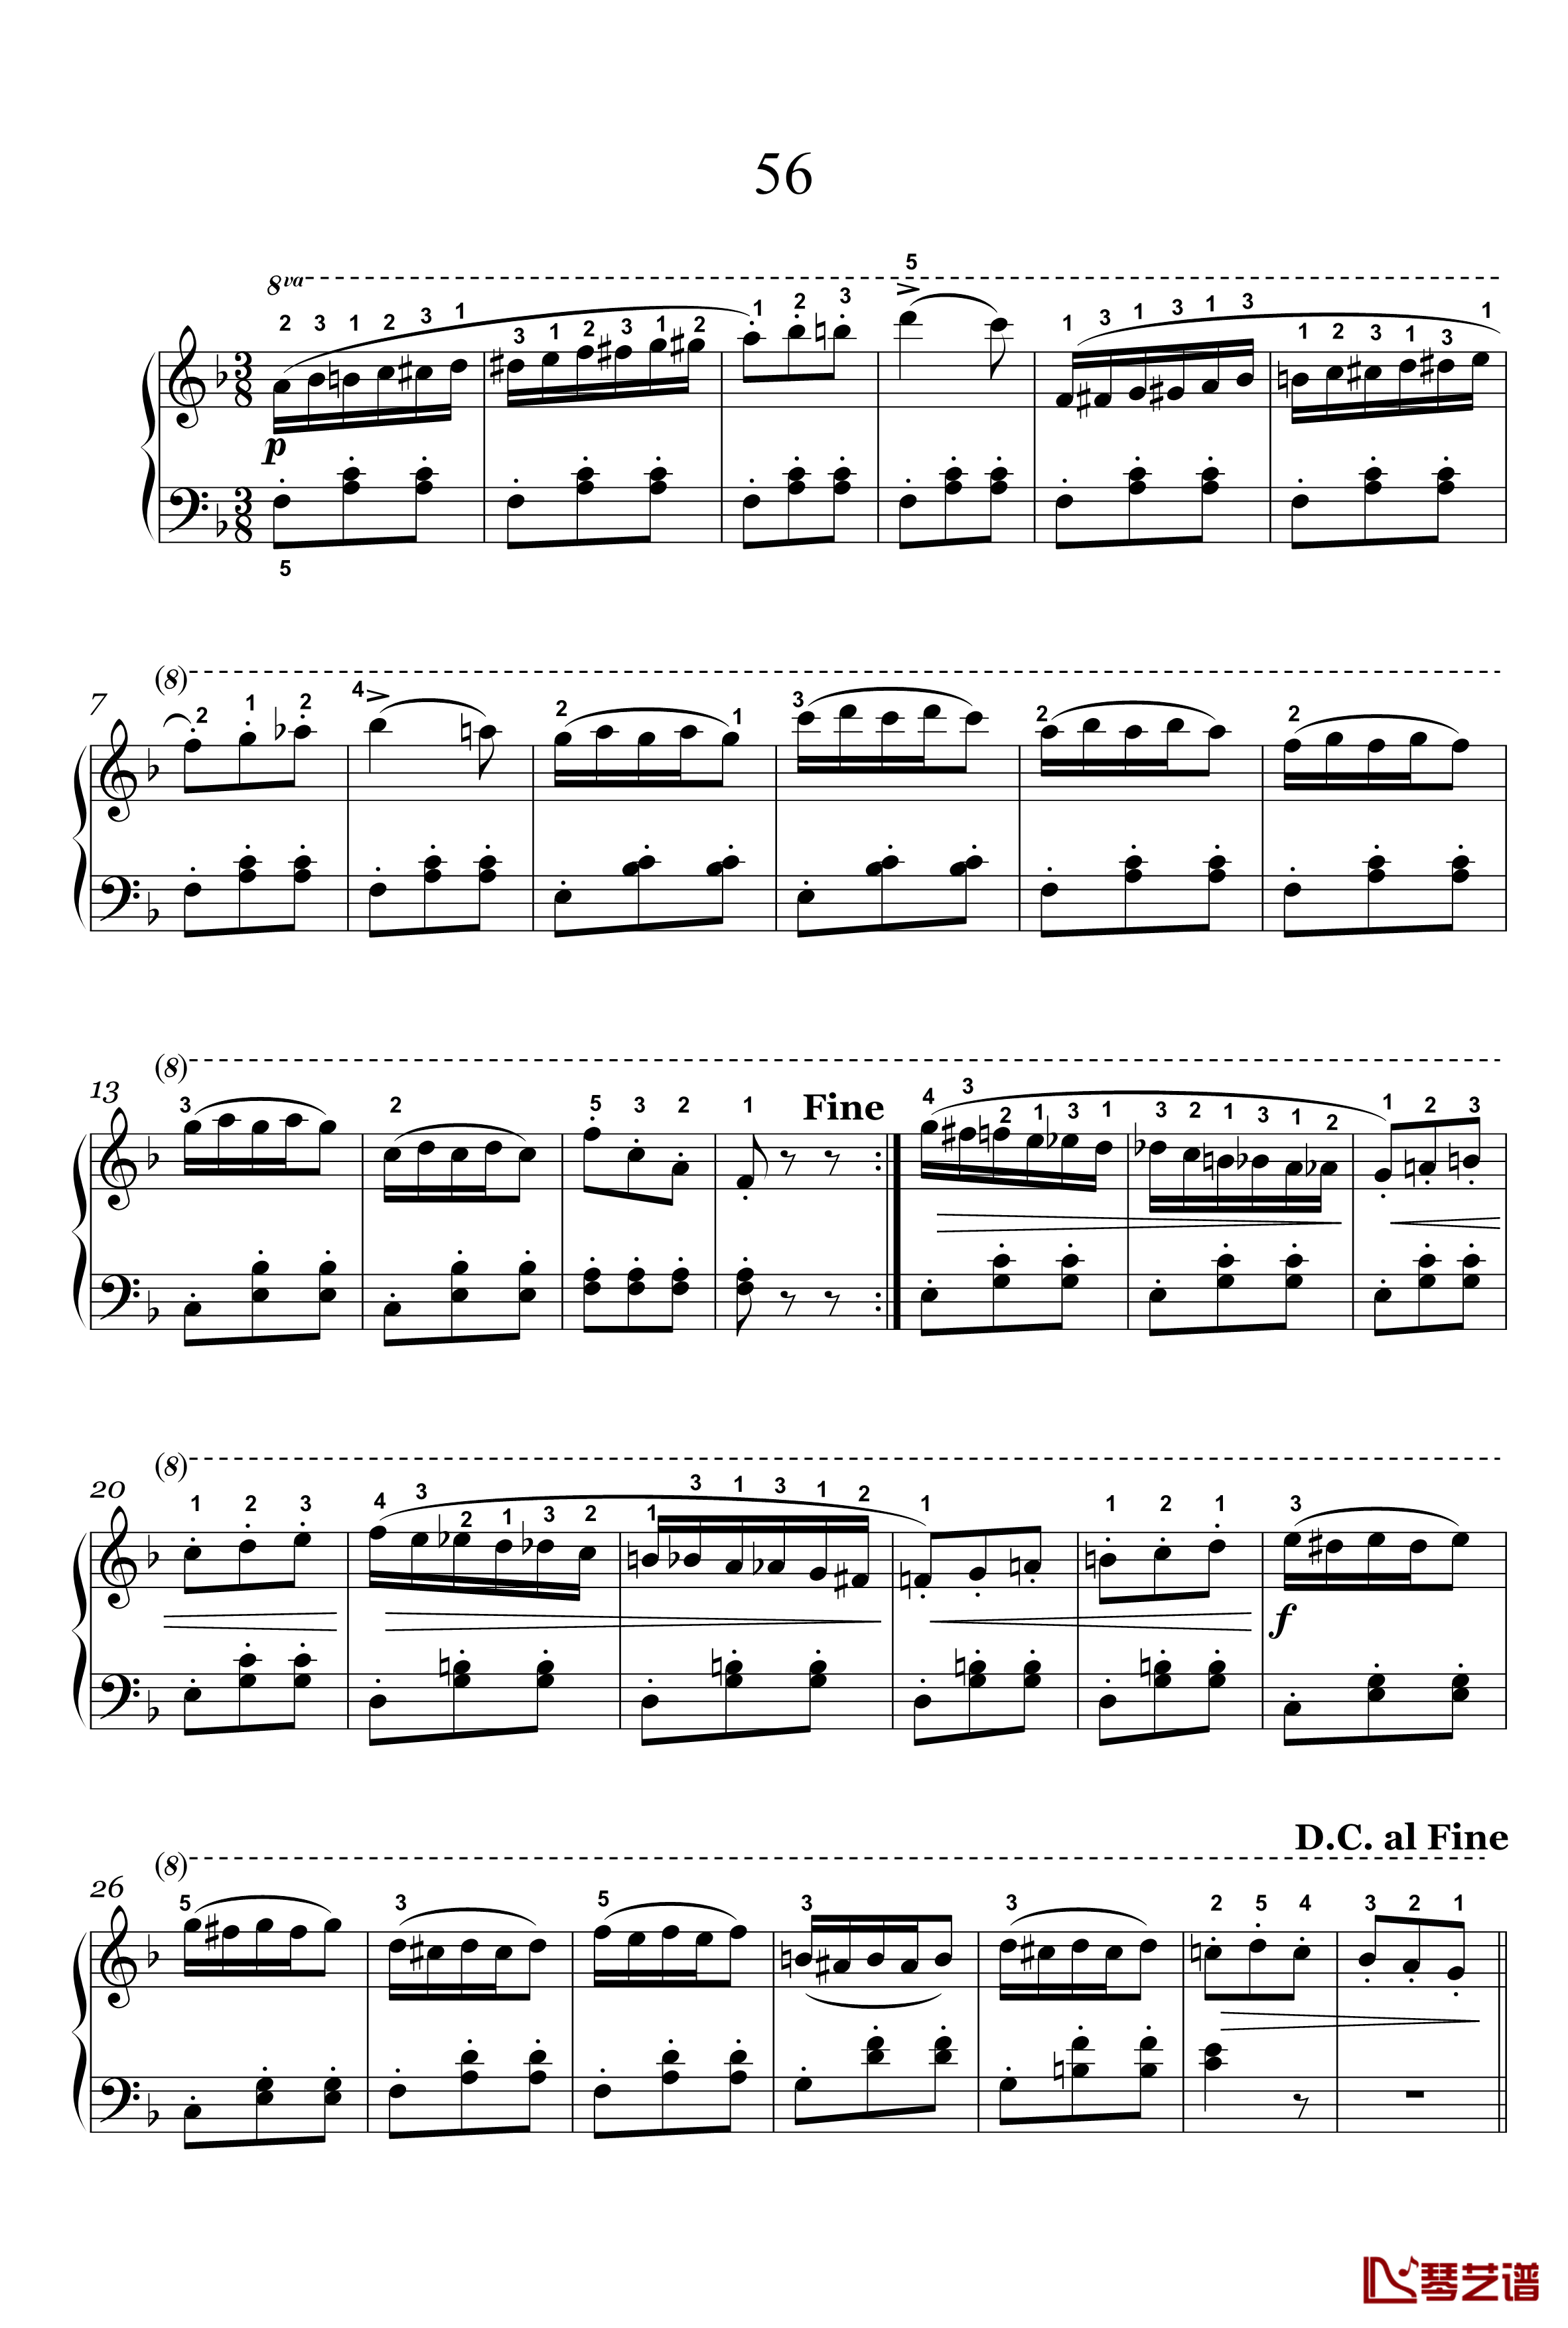 33钢琴谱-56-车尔尼-Czerny-59918